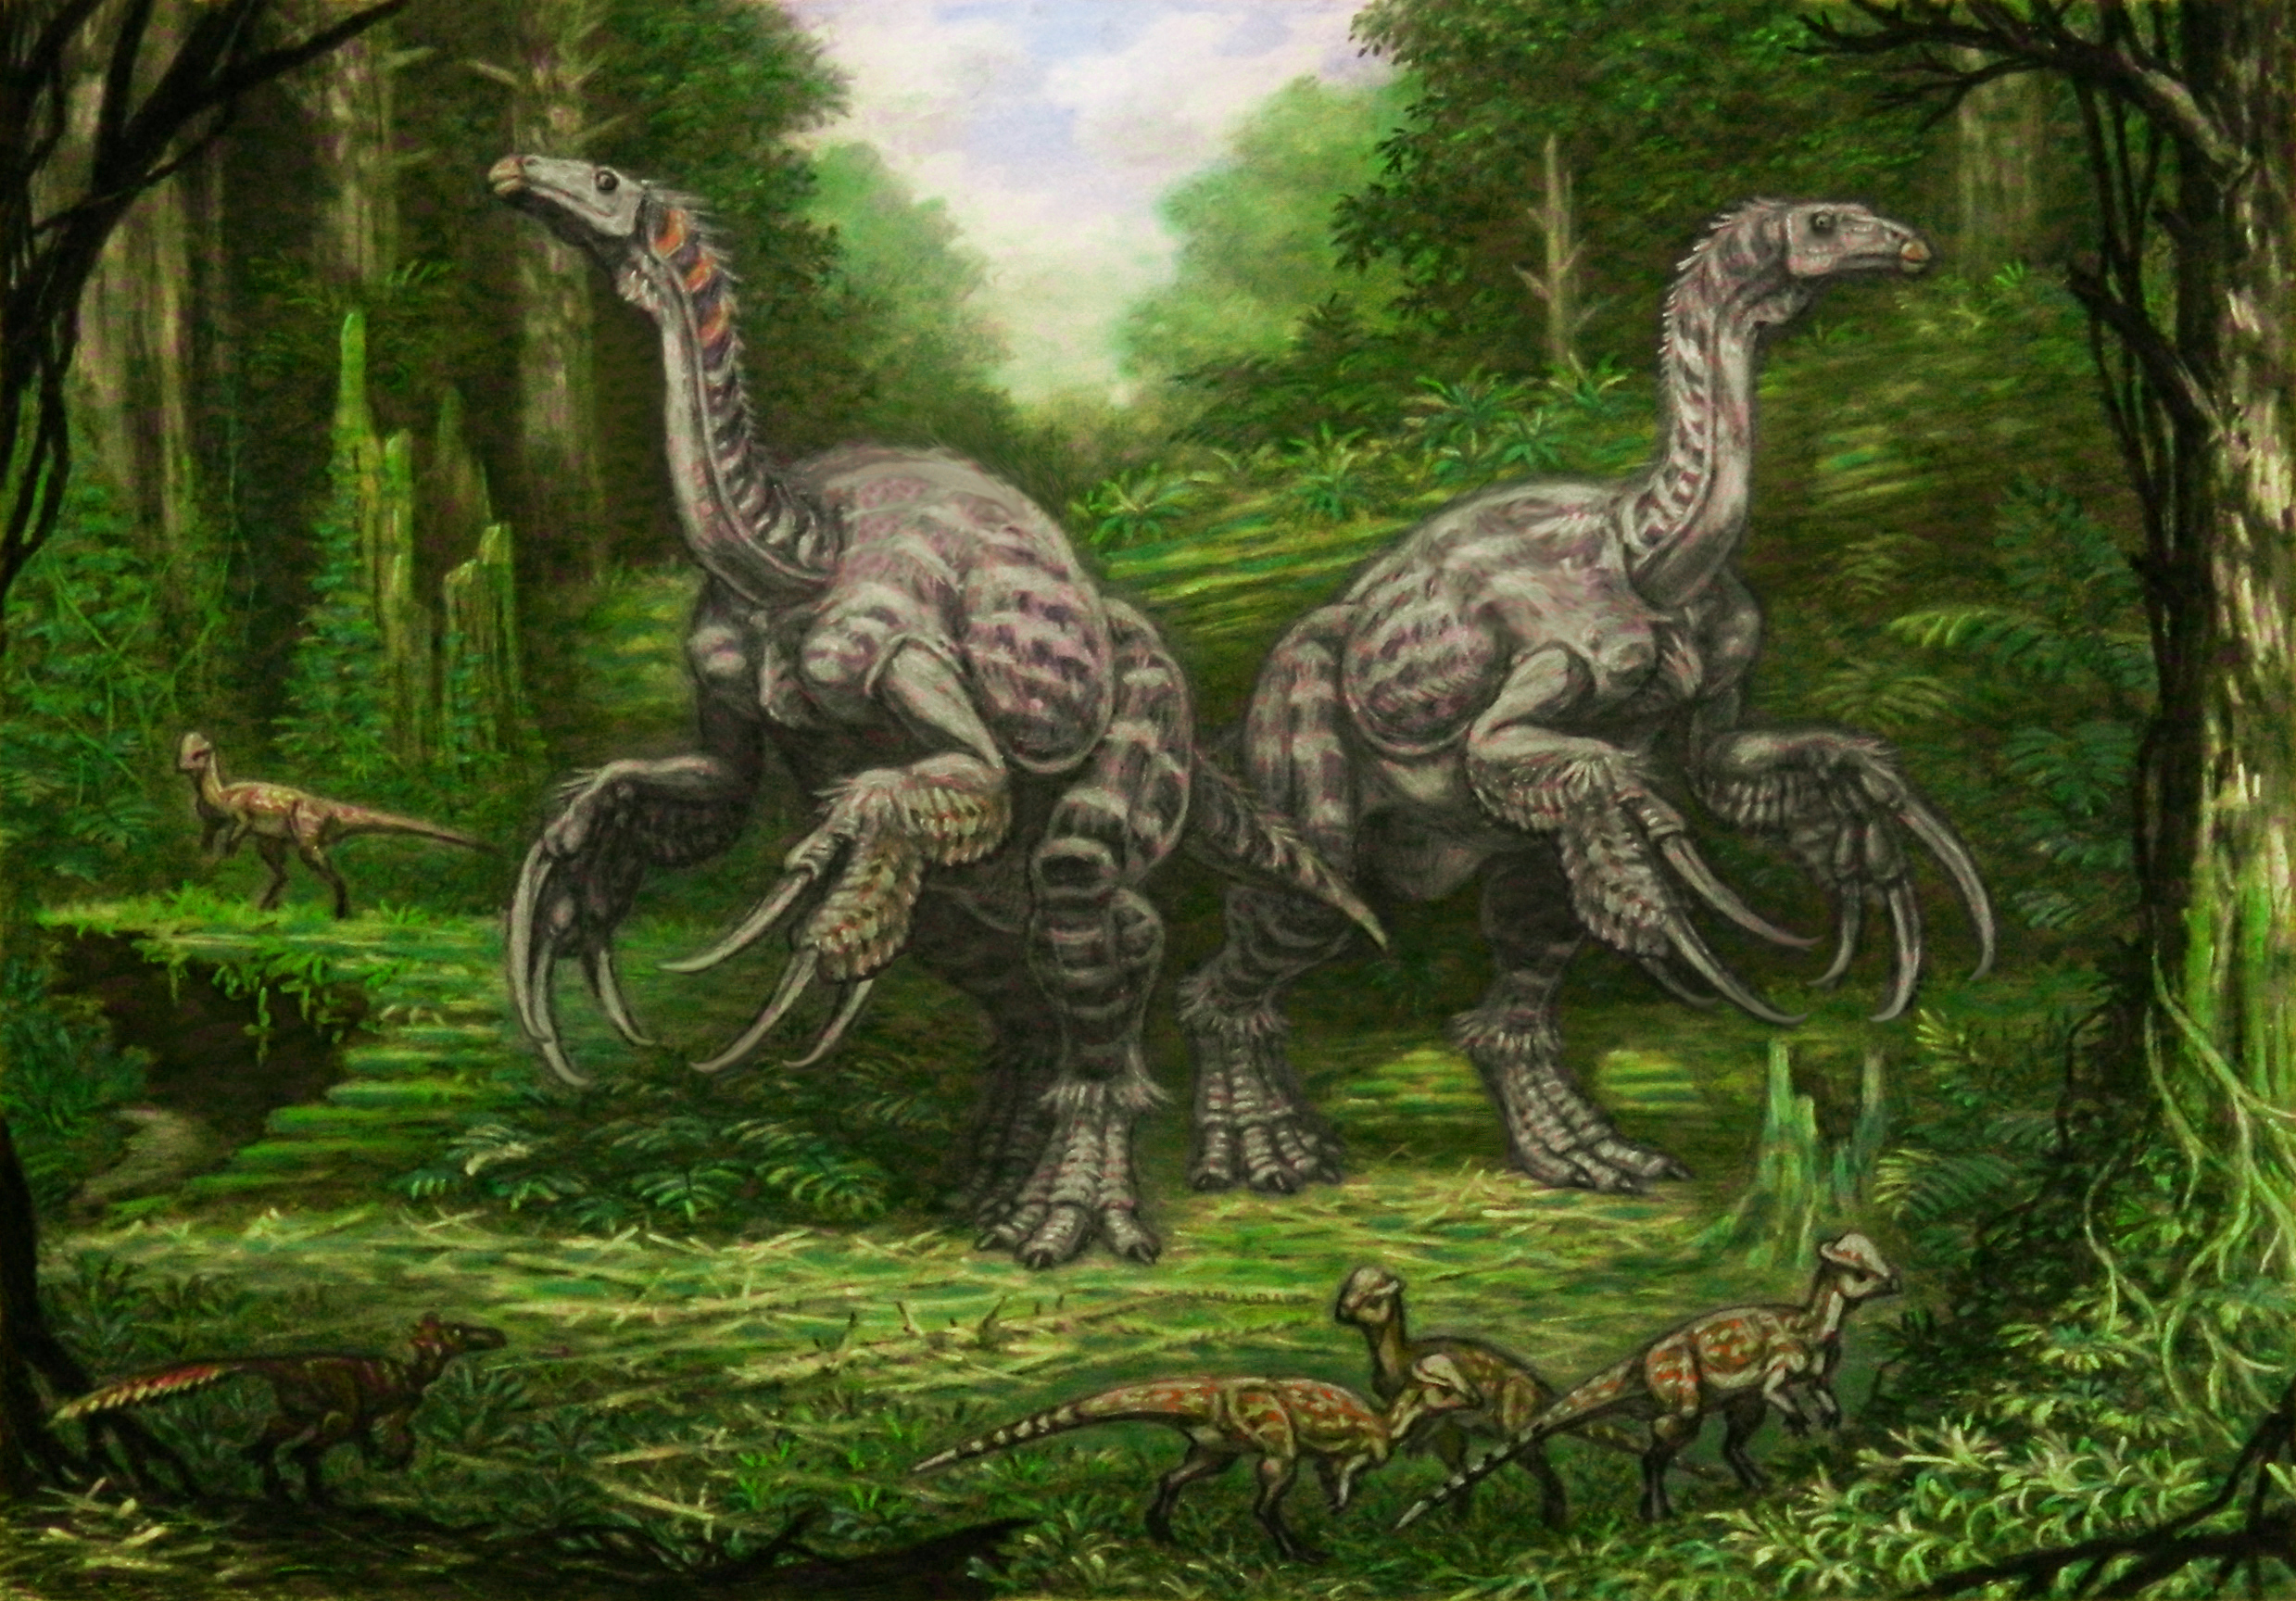 Illustration de therizinosaurus qui possédait d'étranges griffes à la fonction incertaine. © ABelov2014, Wikimedia Commons, CC by 3.0